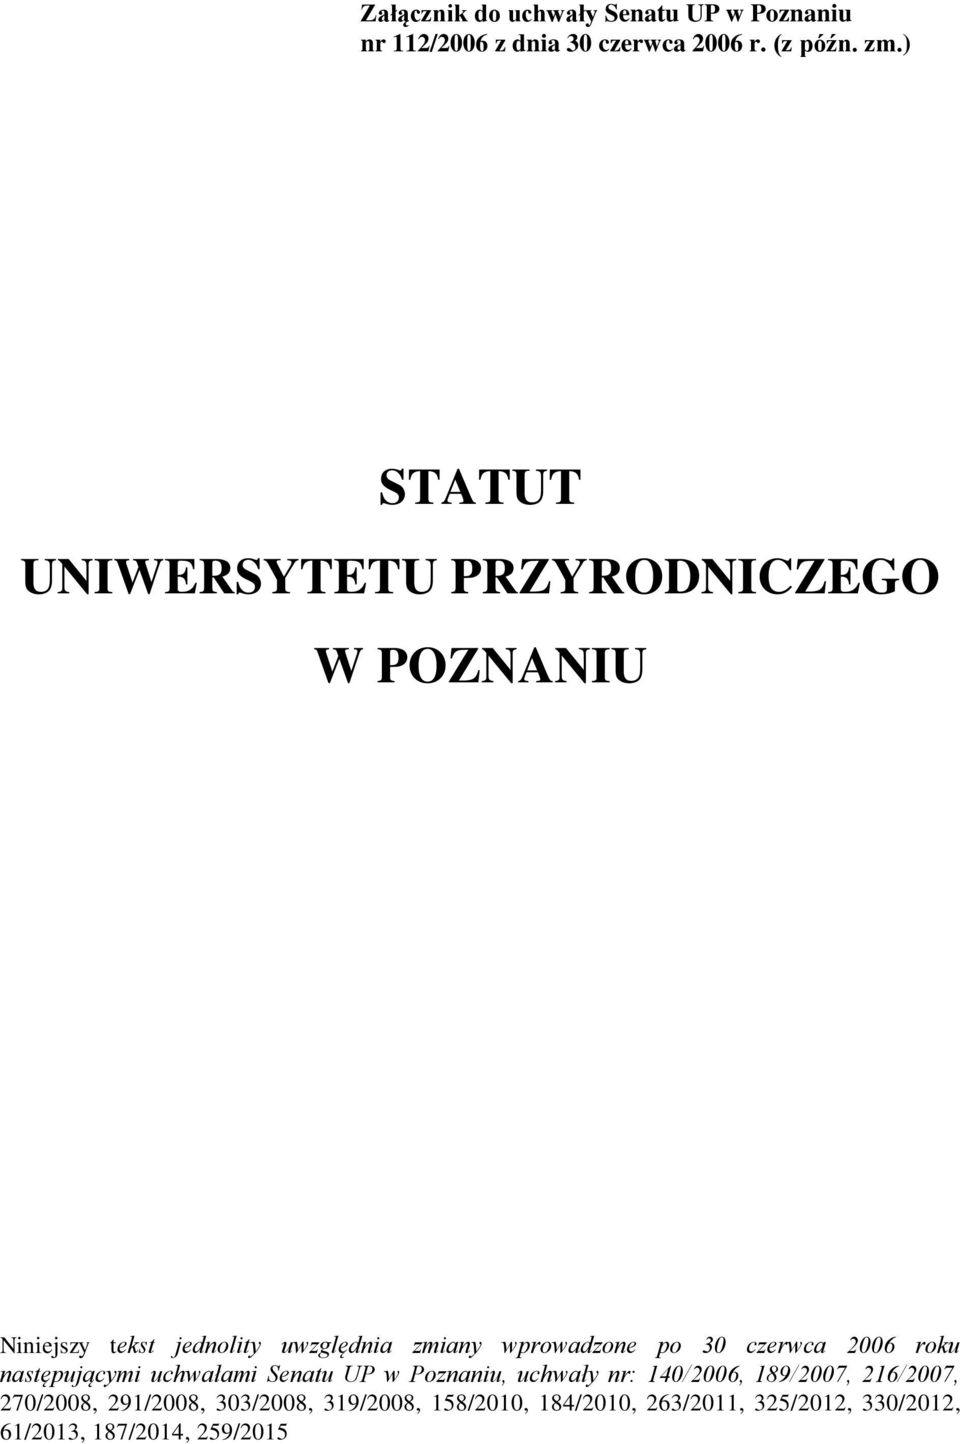 30 czerwca 2006 roku następującymi uchwałami Senatu UP w Poznaniu, uchwały nr: 140/2006, 189/2007,